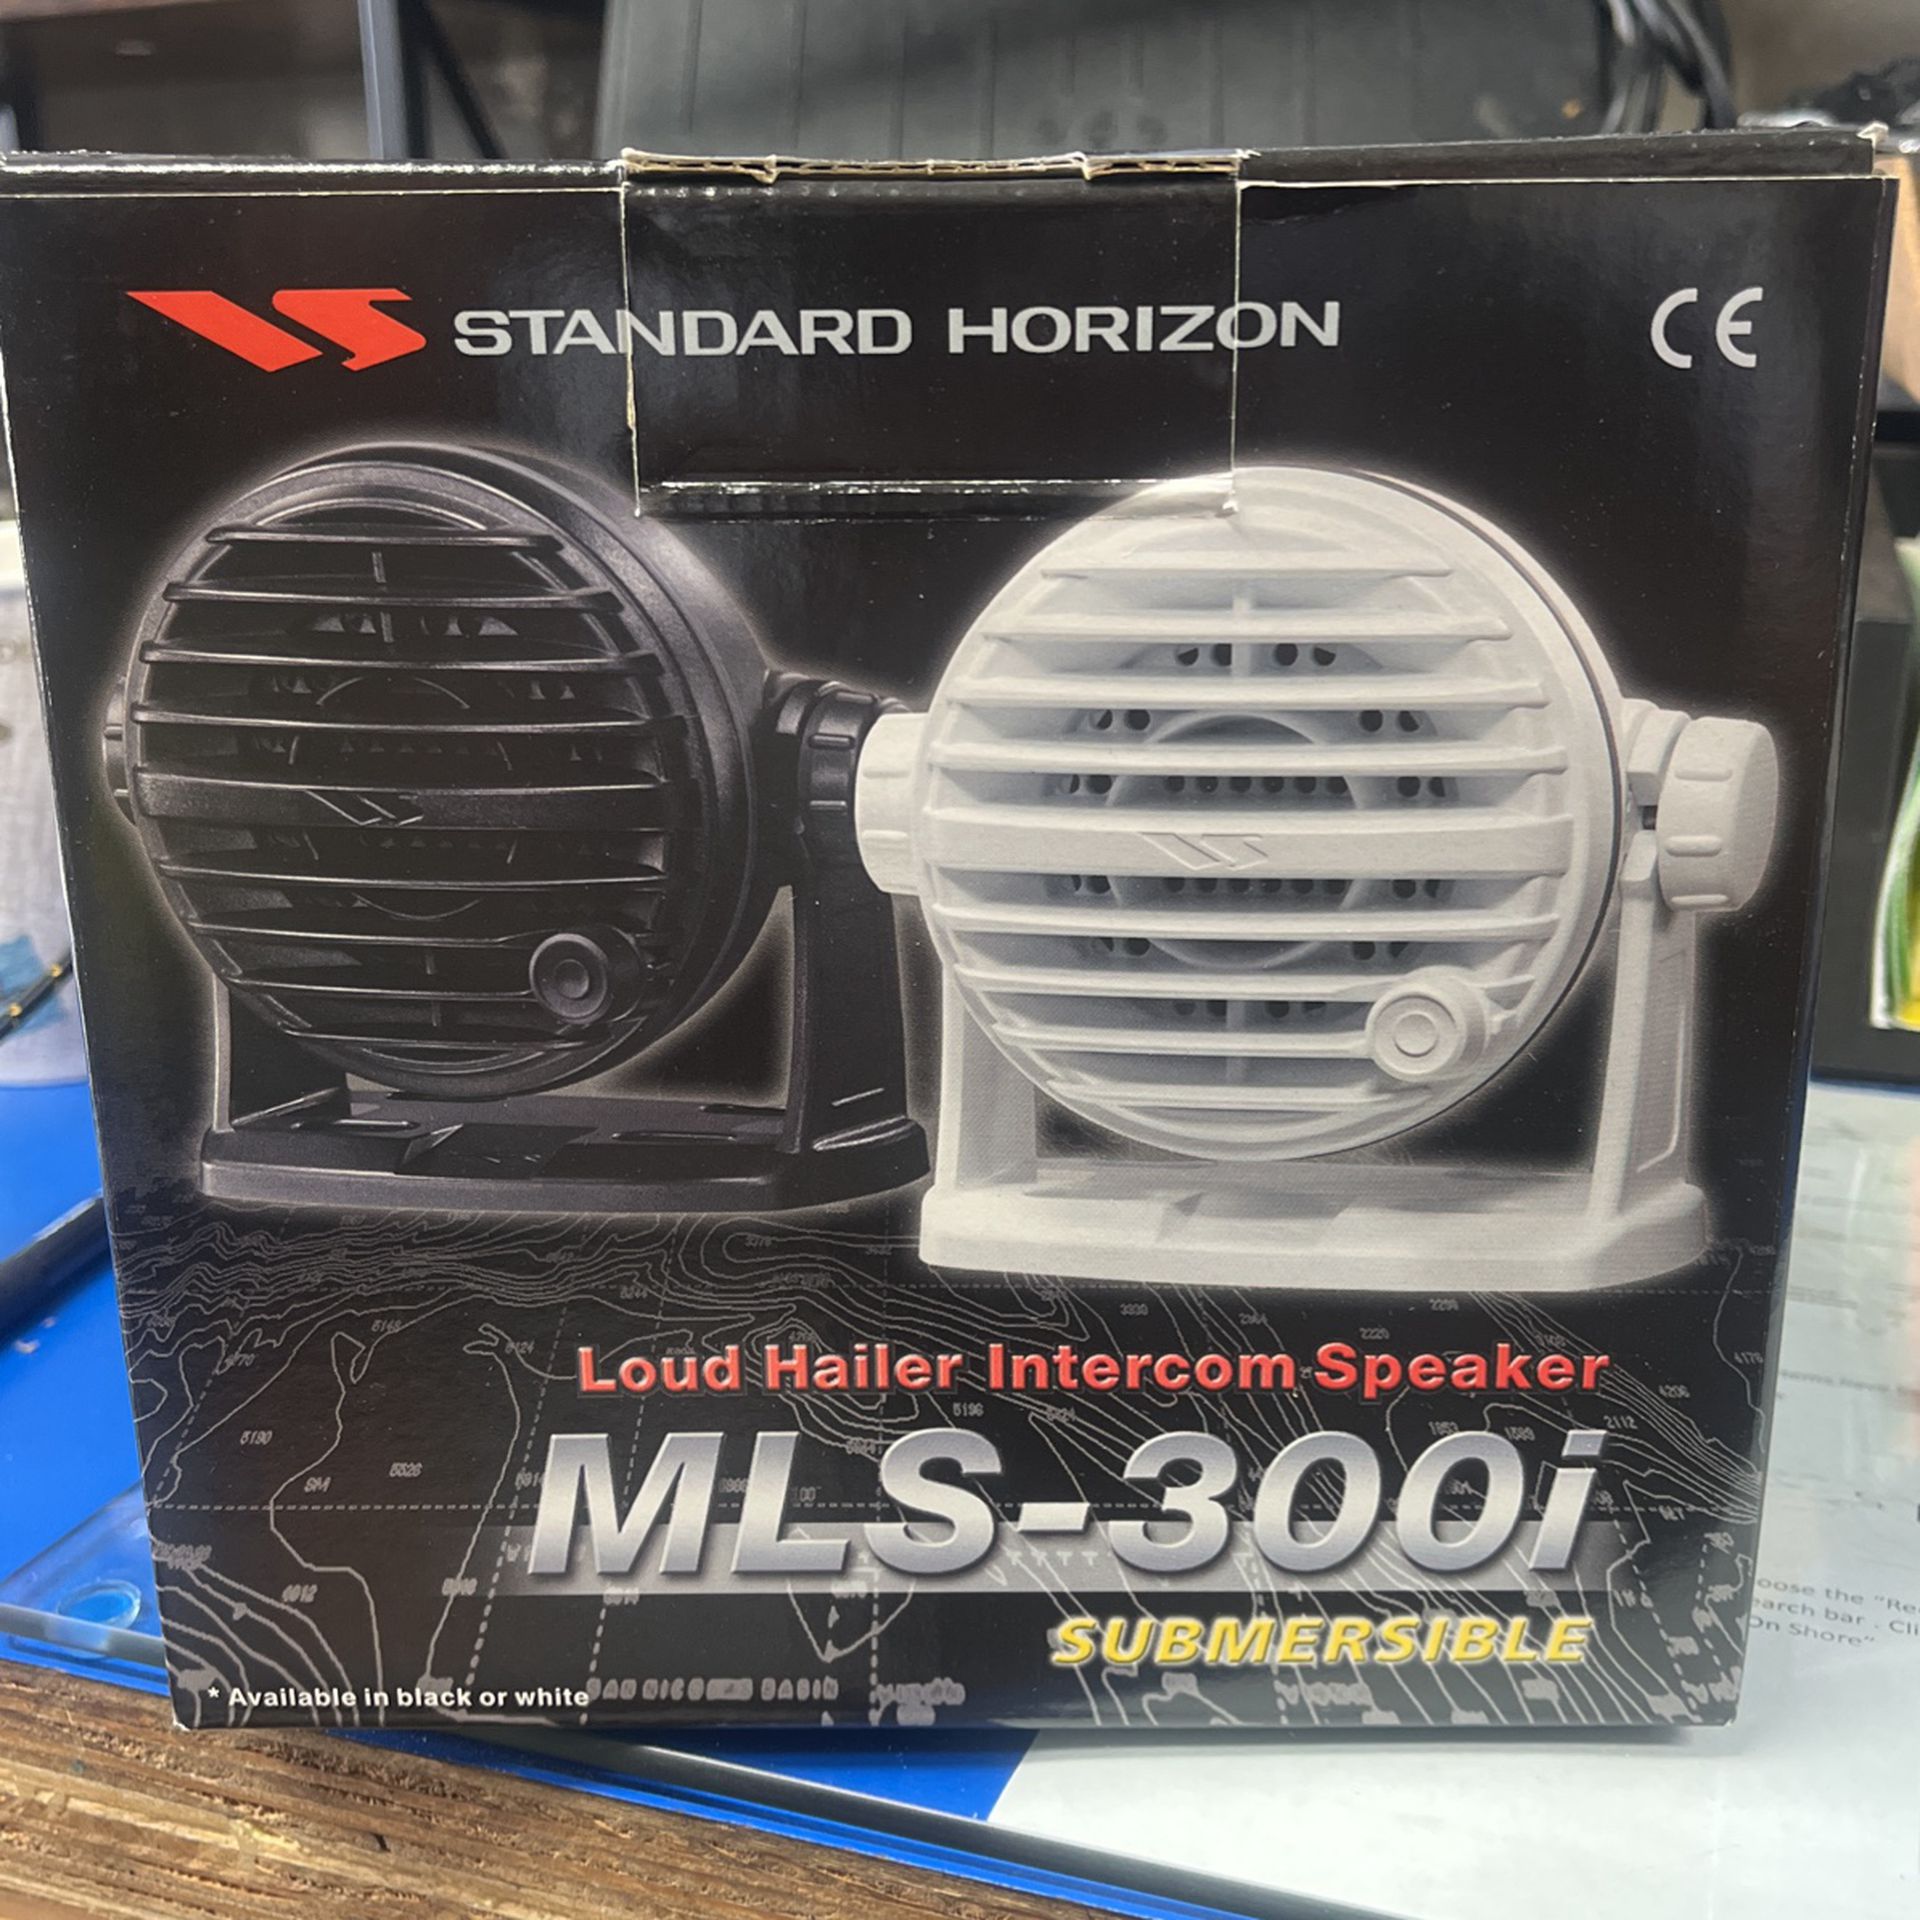 Standard Horizon MLS-300i Loud Hailer Intercom Speaker